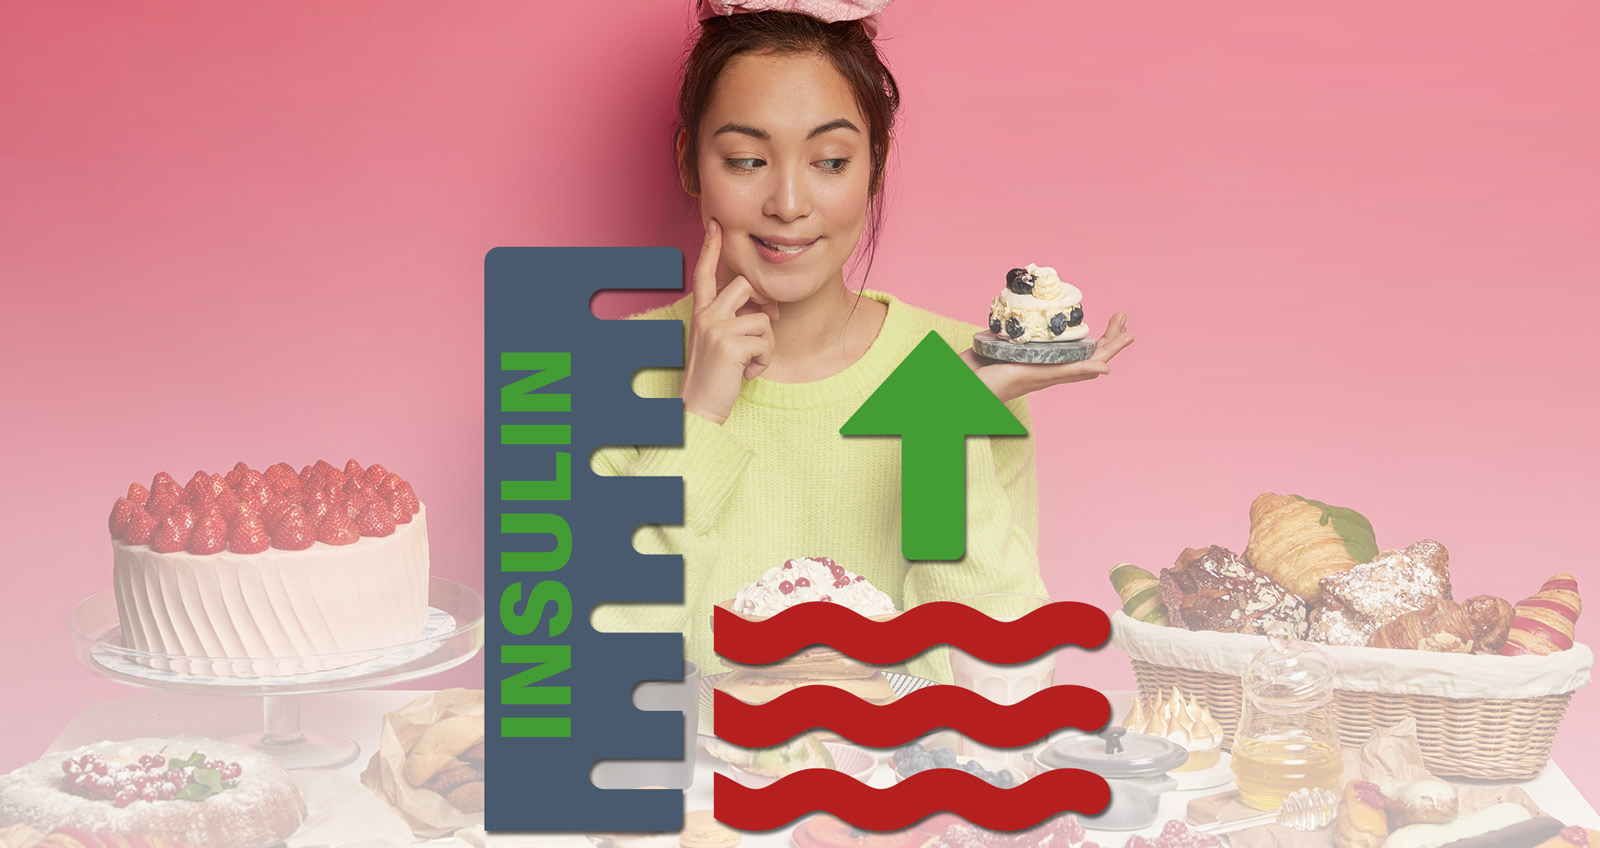 Eine junge Frau an einem Tisch voller Kuchen, in ihrer Hand ein Törtchen, auf welches sie blickt. Davor eine Grafik, die einen steigenden Insulinspiegel darstellt